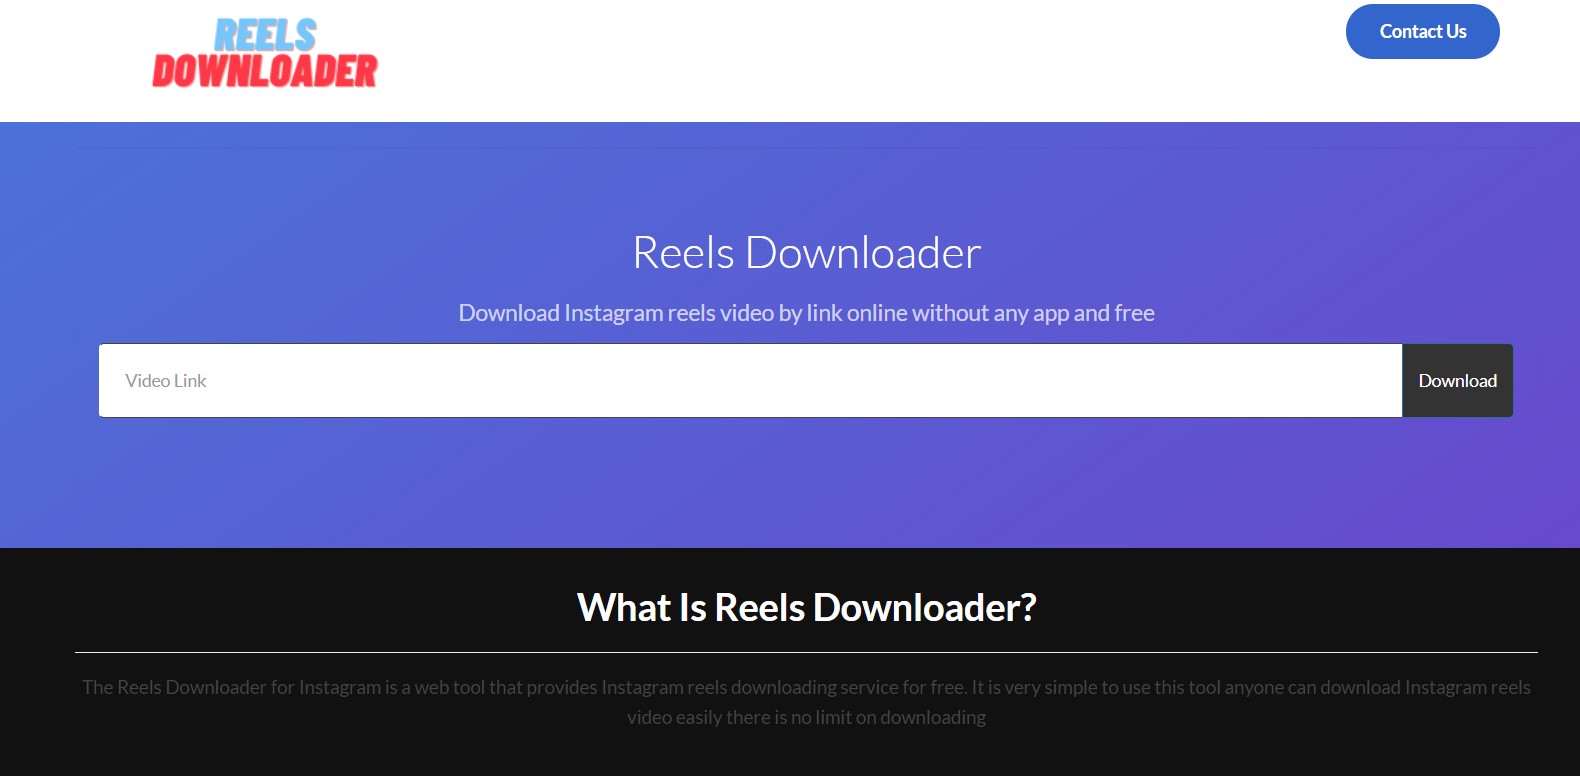 Find detailed information about Reels Downloader